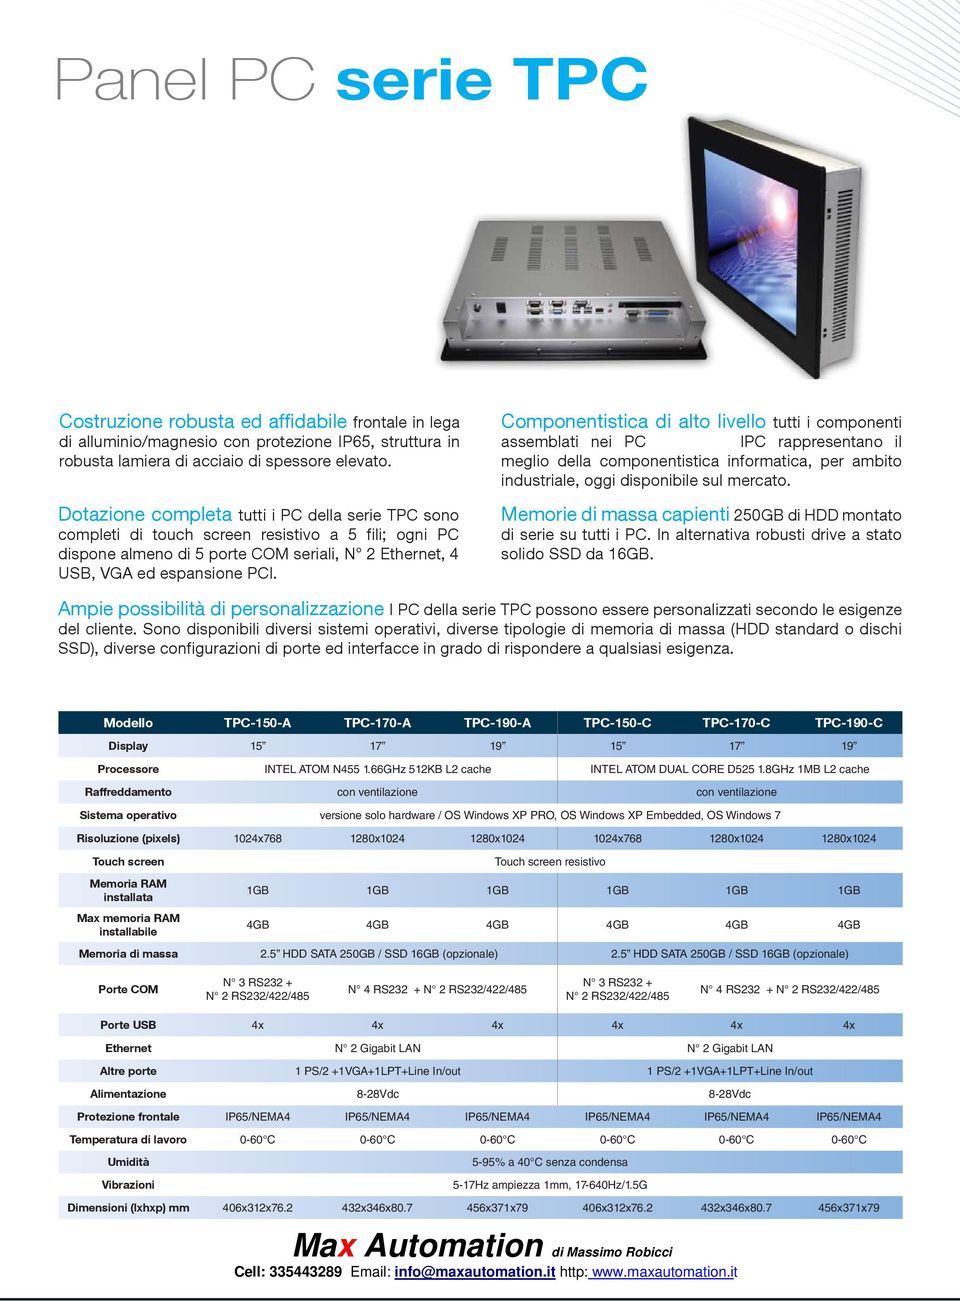 Componentistica di alto livello tutti i componenti assemblati nei PC TECNOBI IPC rappresentano il meglio della componentistica informatica, per ambito industriale, oggi disponibile sul mercato.